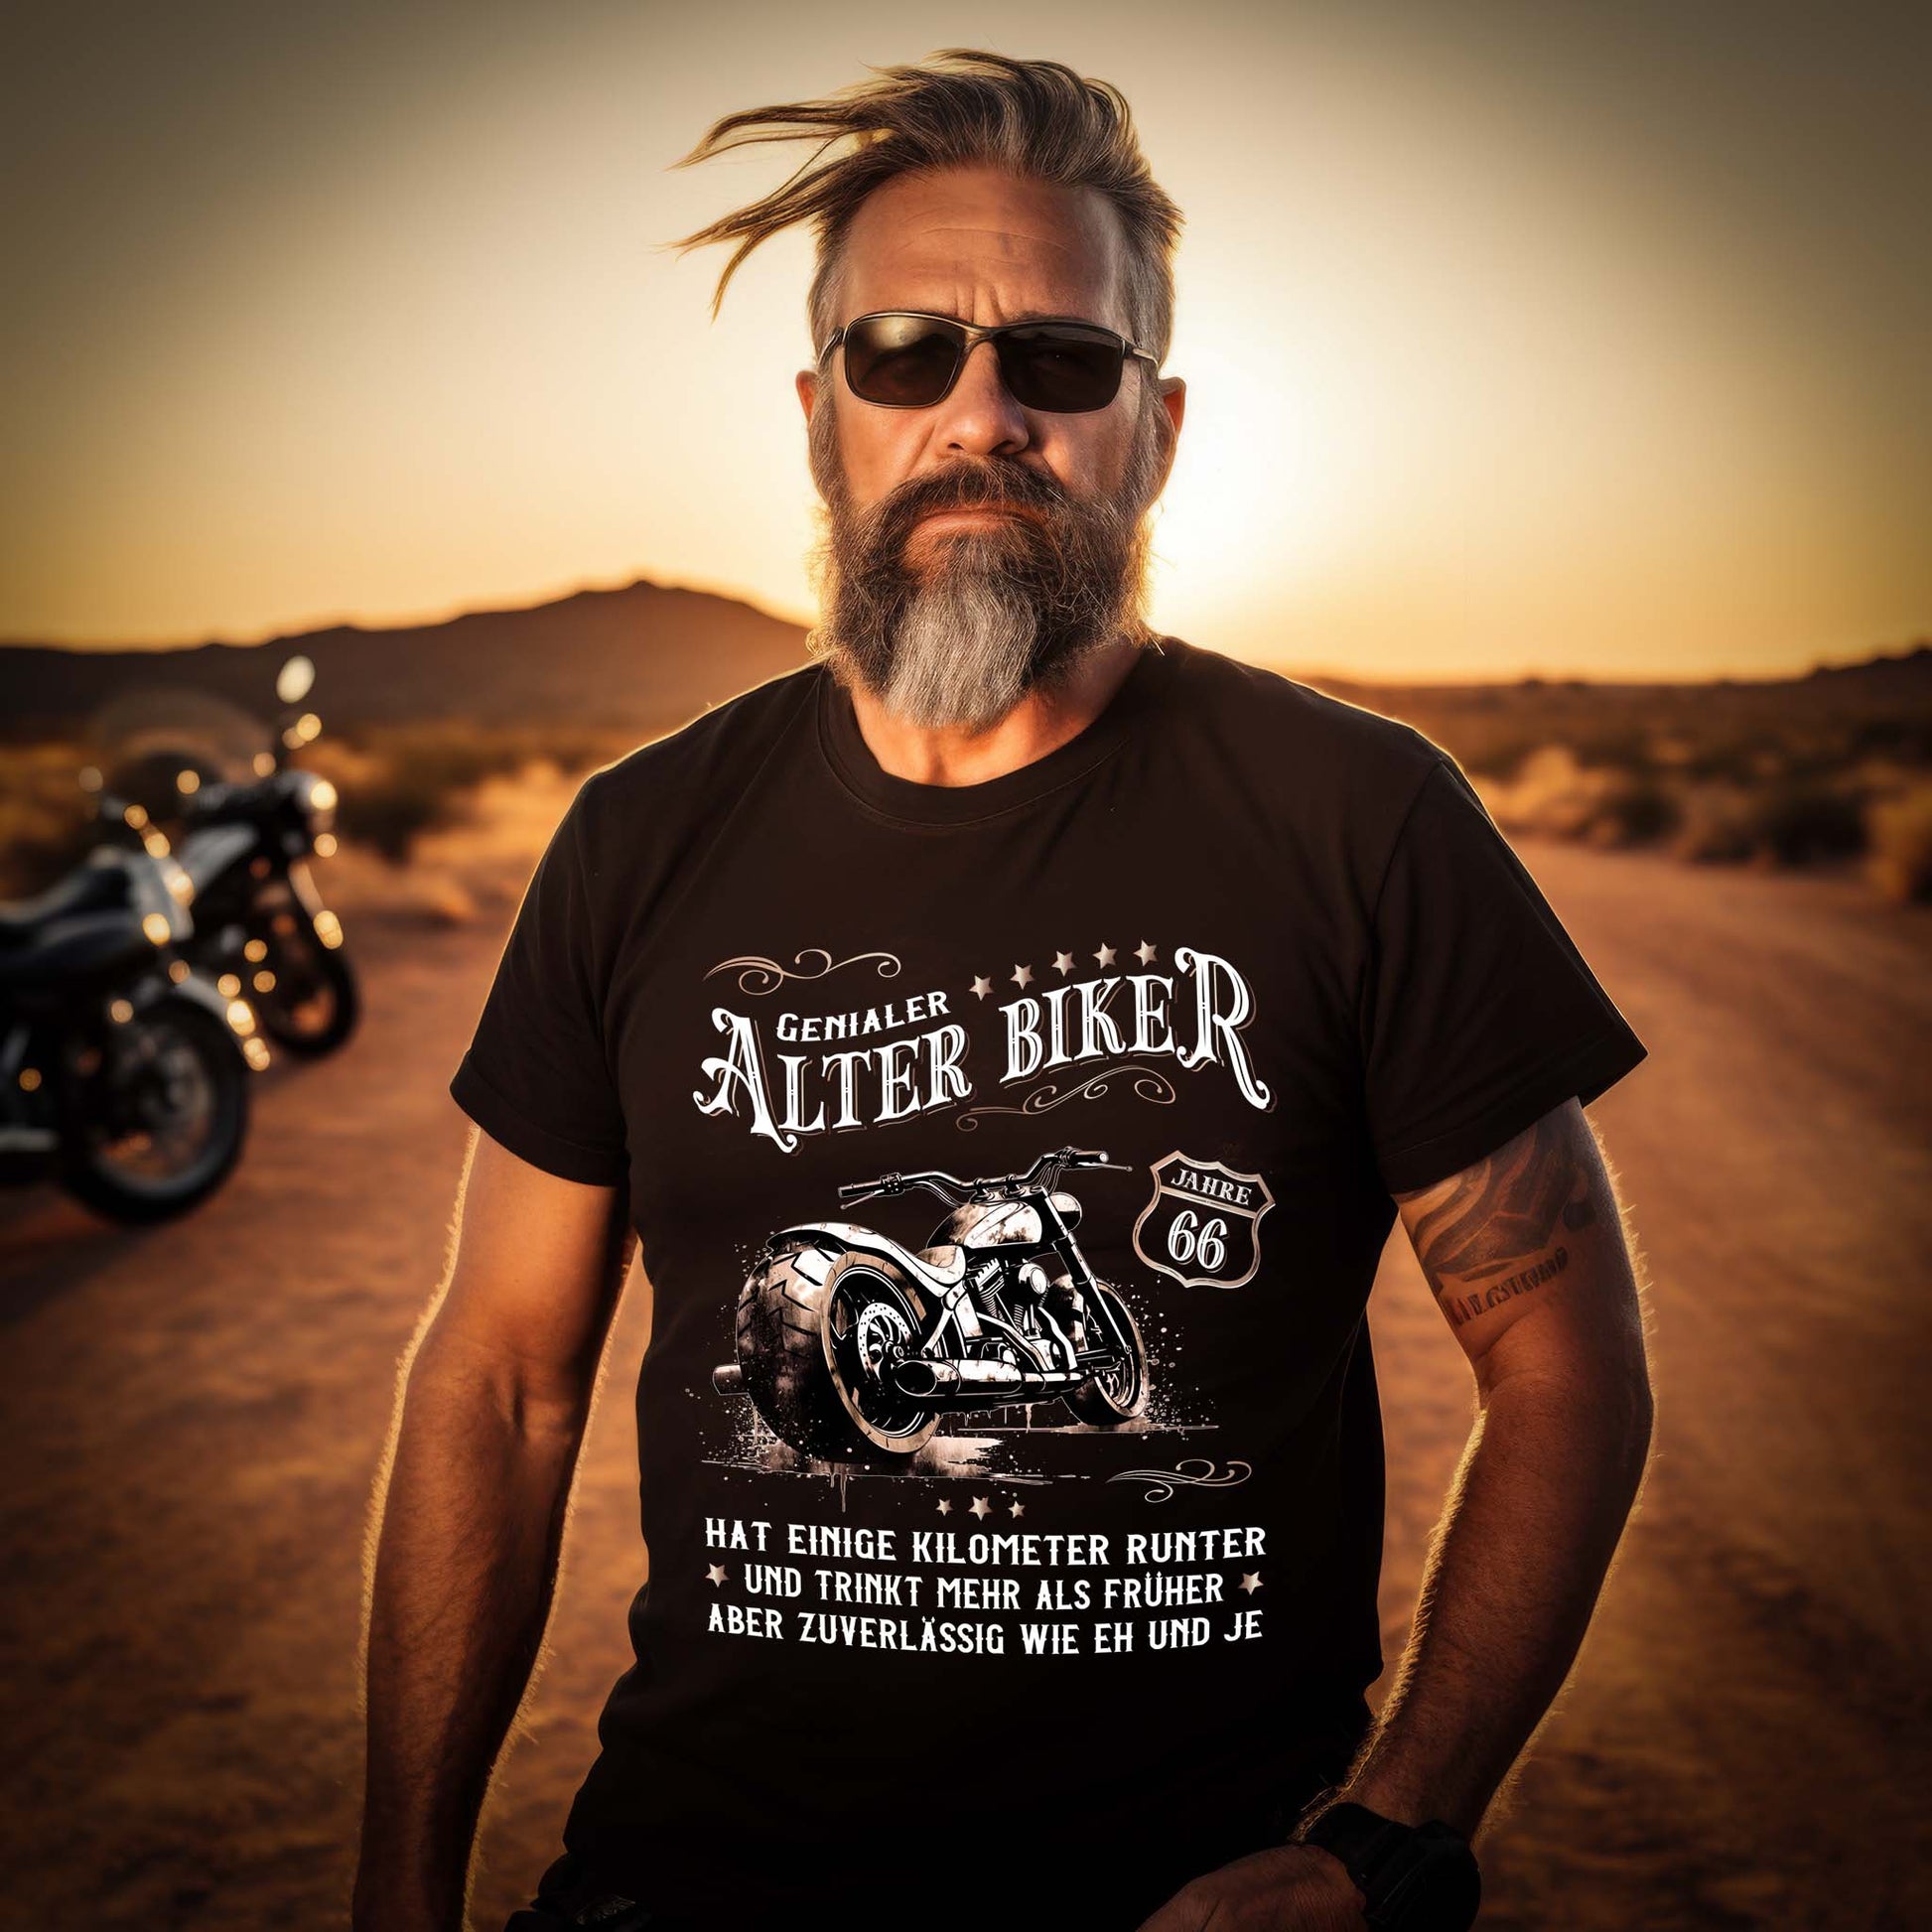 Ein Biker Geburtstags- T-Shirt für Motorradfahrer von Wingbikers mit dem Aufdruck, Alter Biker - 66 Jahre - Einige Kilometer runter, trinkt mehr - aber zuverlässig wie eh und je - in schwarz.